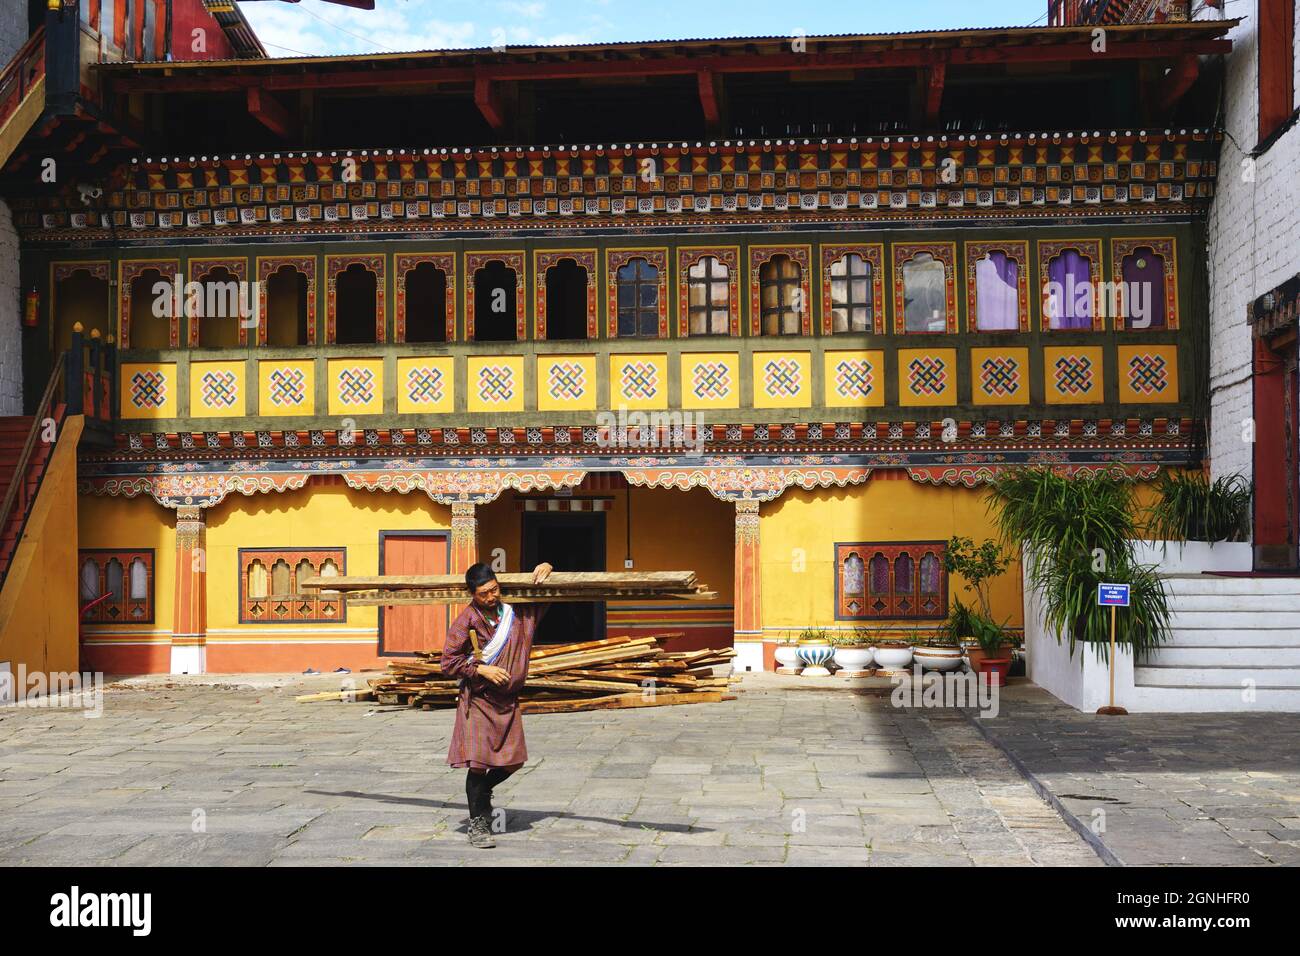 Ein Arbeiter, der eine traditionelle bhutanische gho trägt, trägt Holz an einem bunt bemalten Gebäude auf dem Gelände des Tashichho Dzong in Thimphu, Bhutan vorbei. Stockfoto